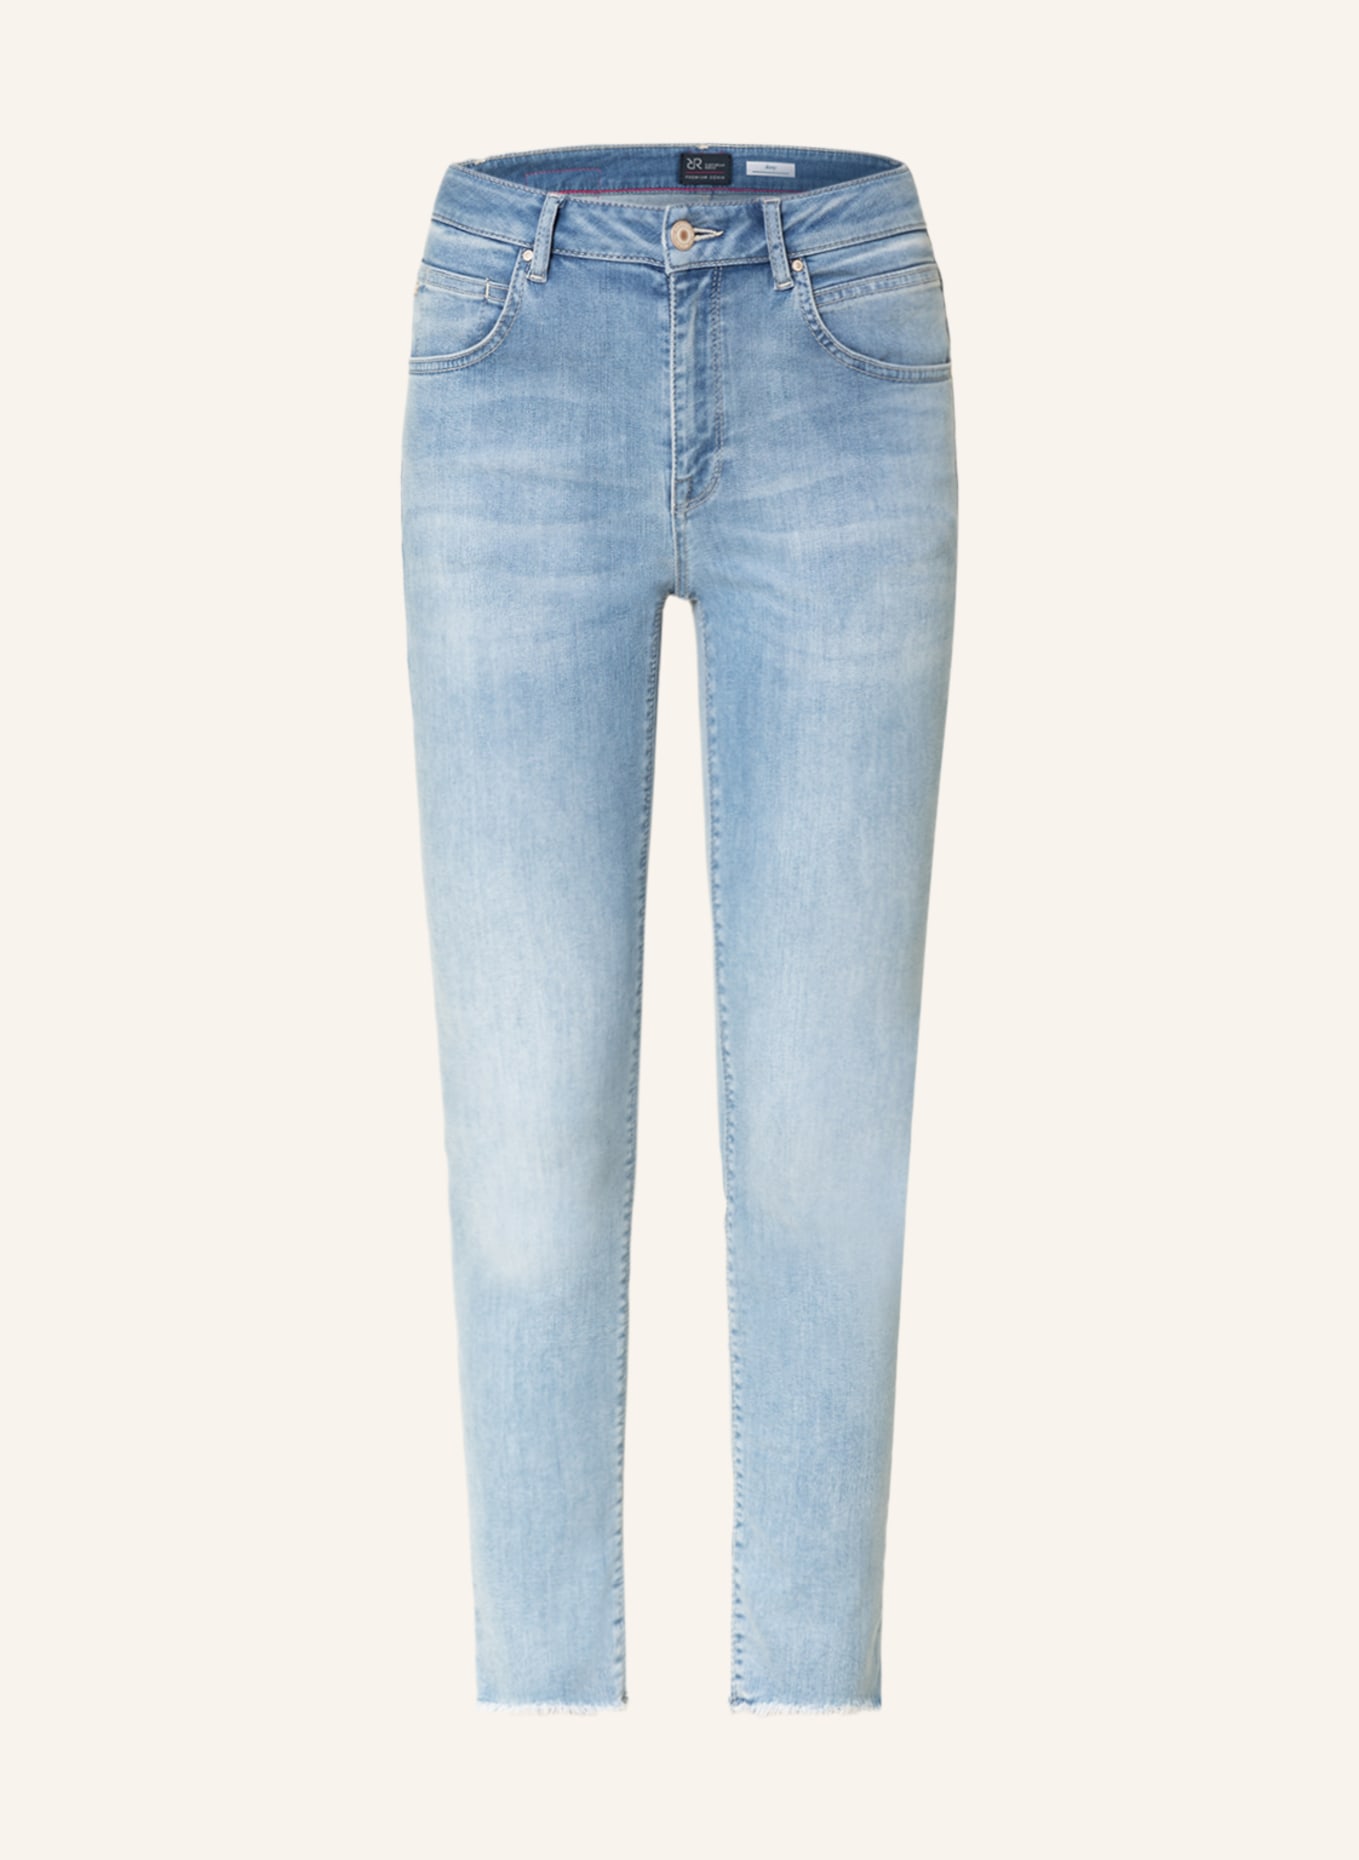 RAFFAELLO ROSSI Skinny Jeans AMAL , Farbe: 810 LIGHT BLUE (Bild 1)